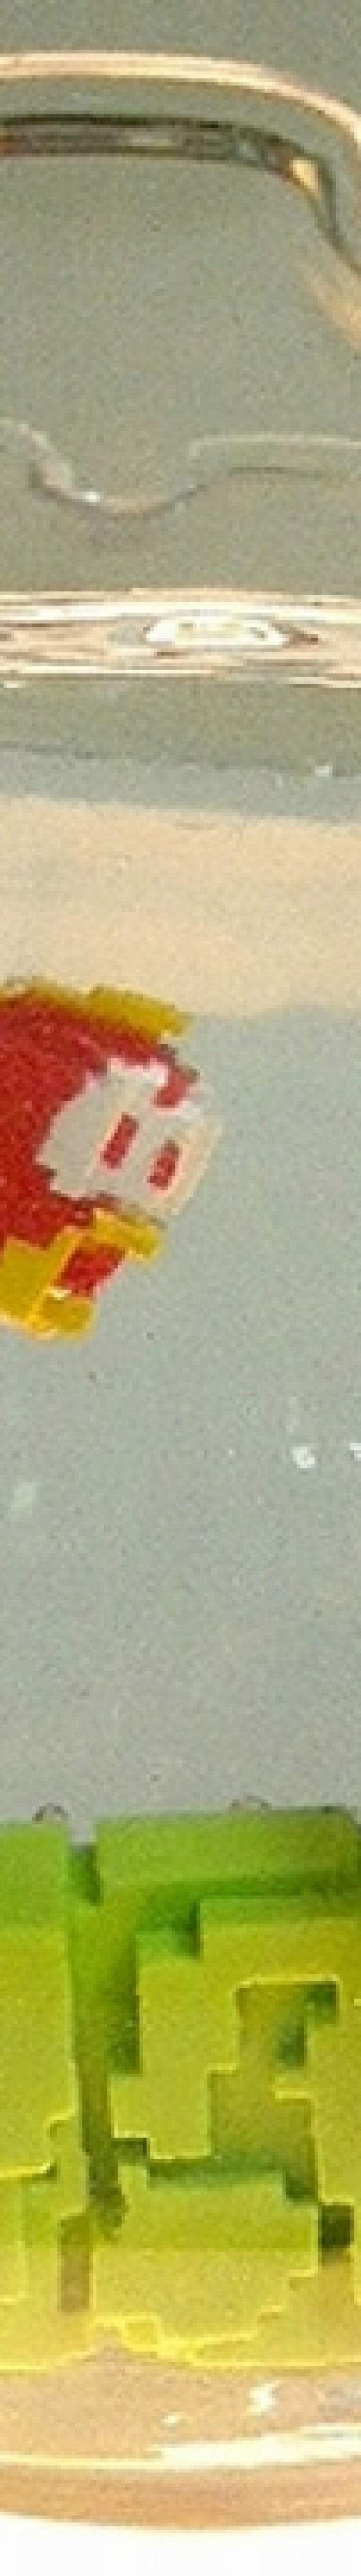 Aquário de geek ao invés de peixe tem Super Mario!